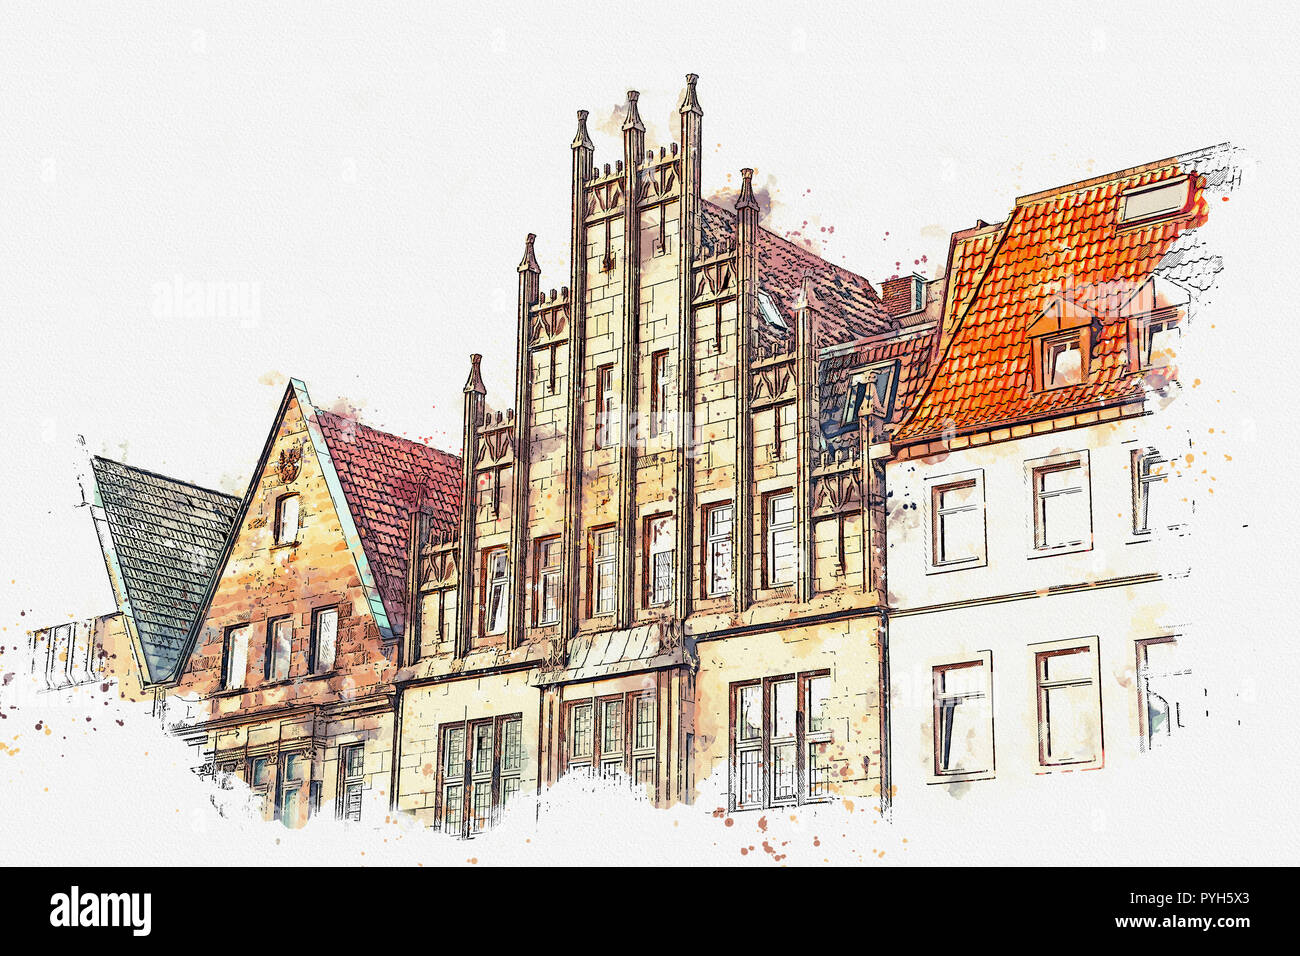 Abbildung oder Aquarell Skizze. Architektur oder die alten Häuser auf die Straße der Stadt ältesten Principalmark in Münster in Deutschland. Die Häuser wurden bu Stockfoto